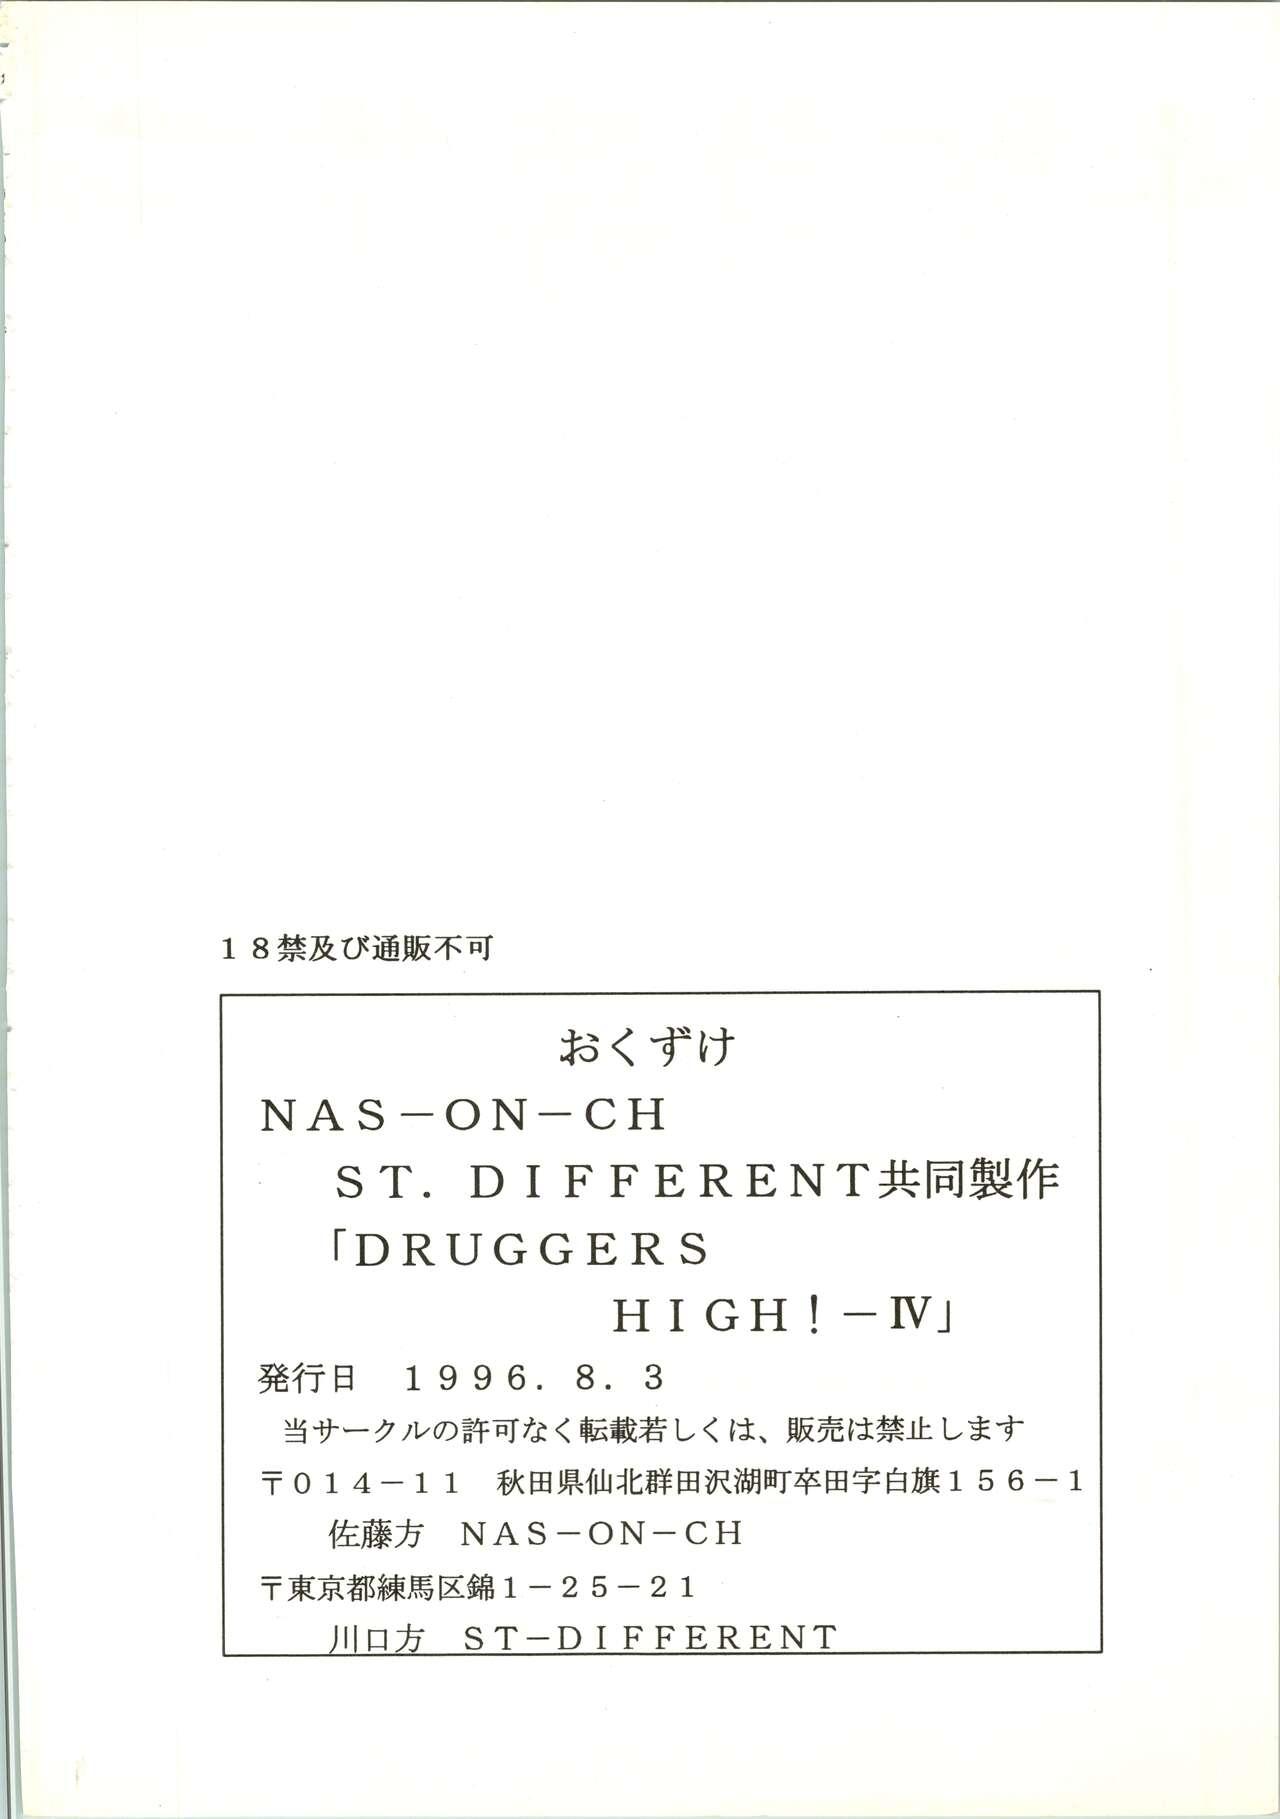 Druggers High!! IV 77